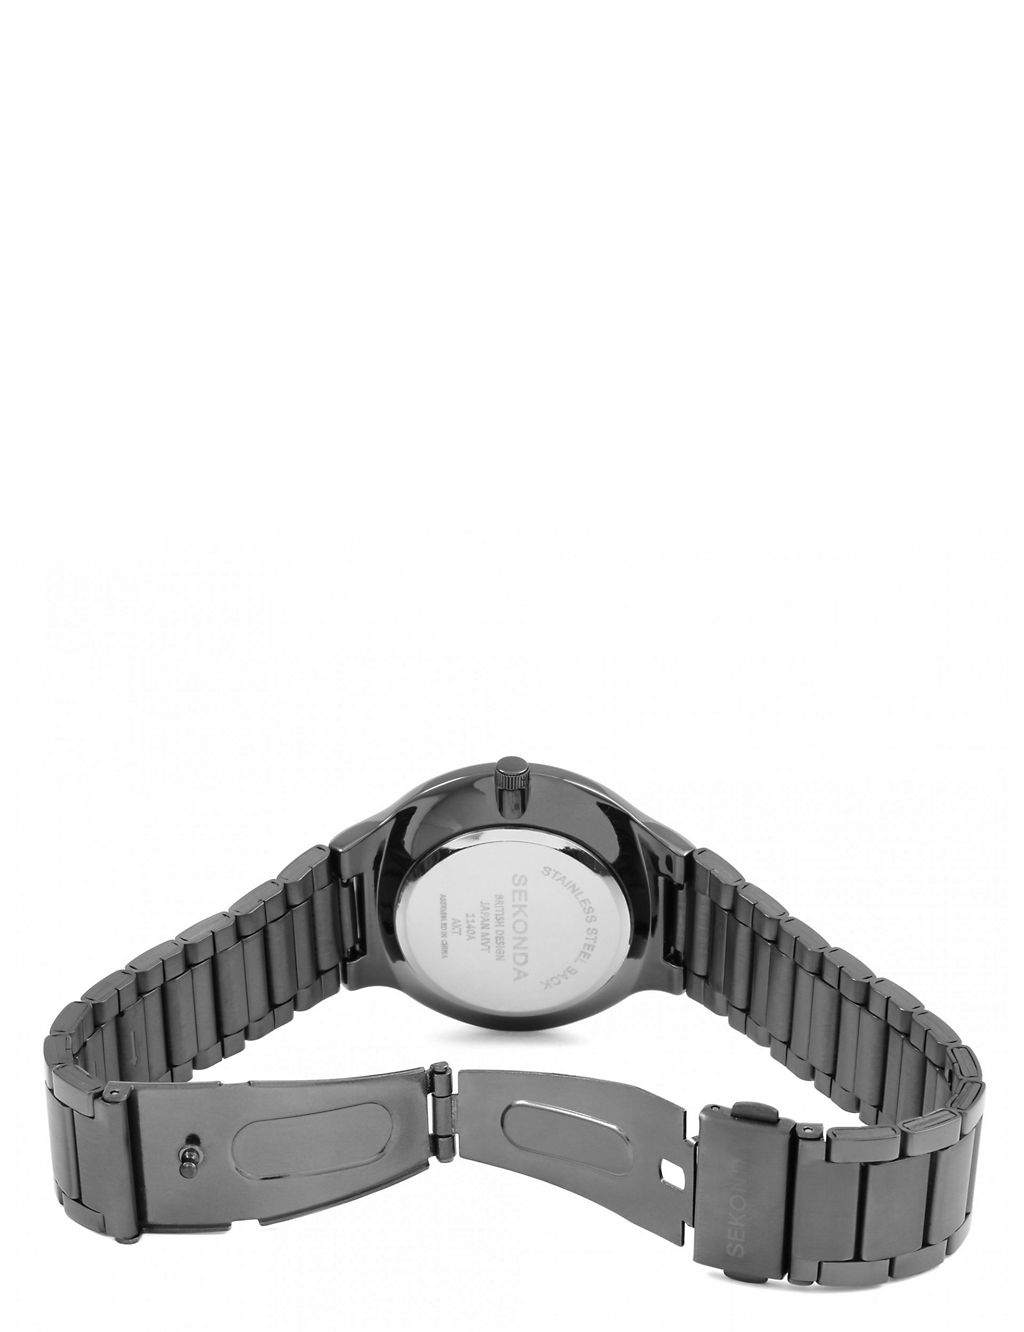 Sekonda Black Stainless Steel Watch 4 of 6